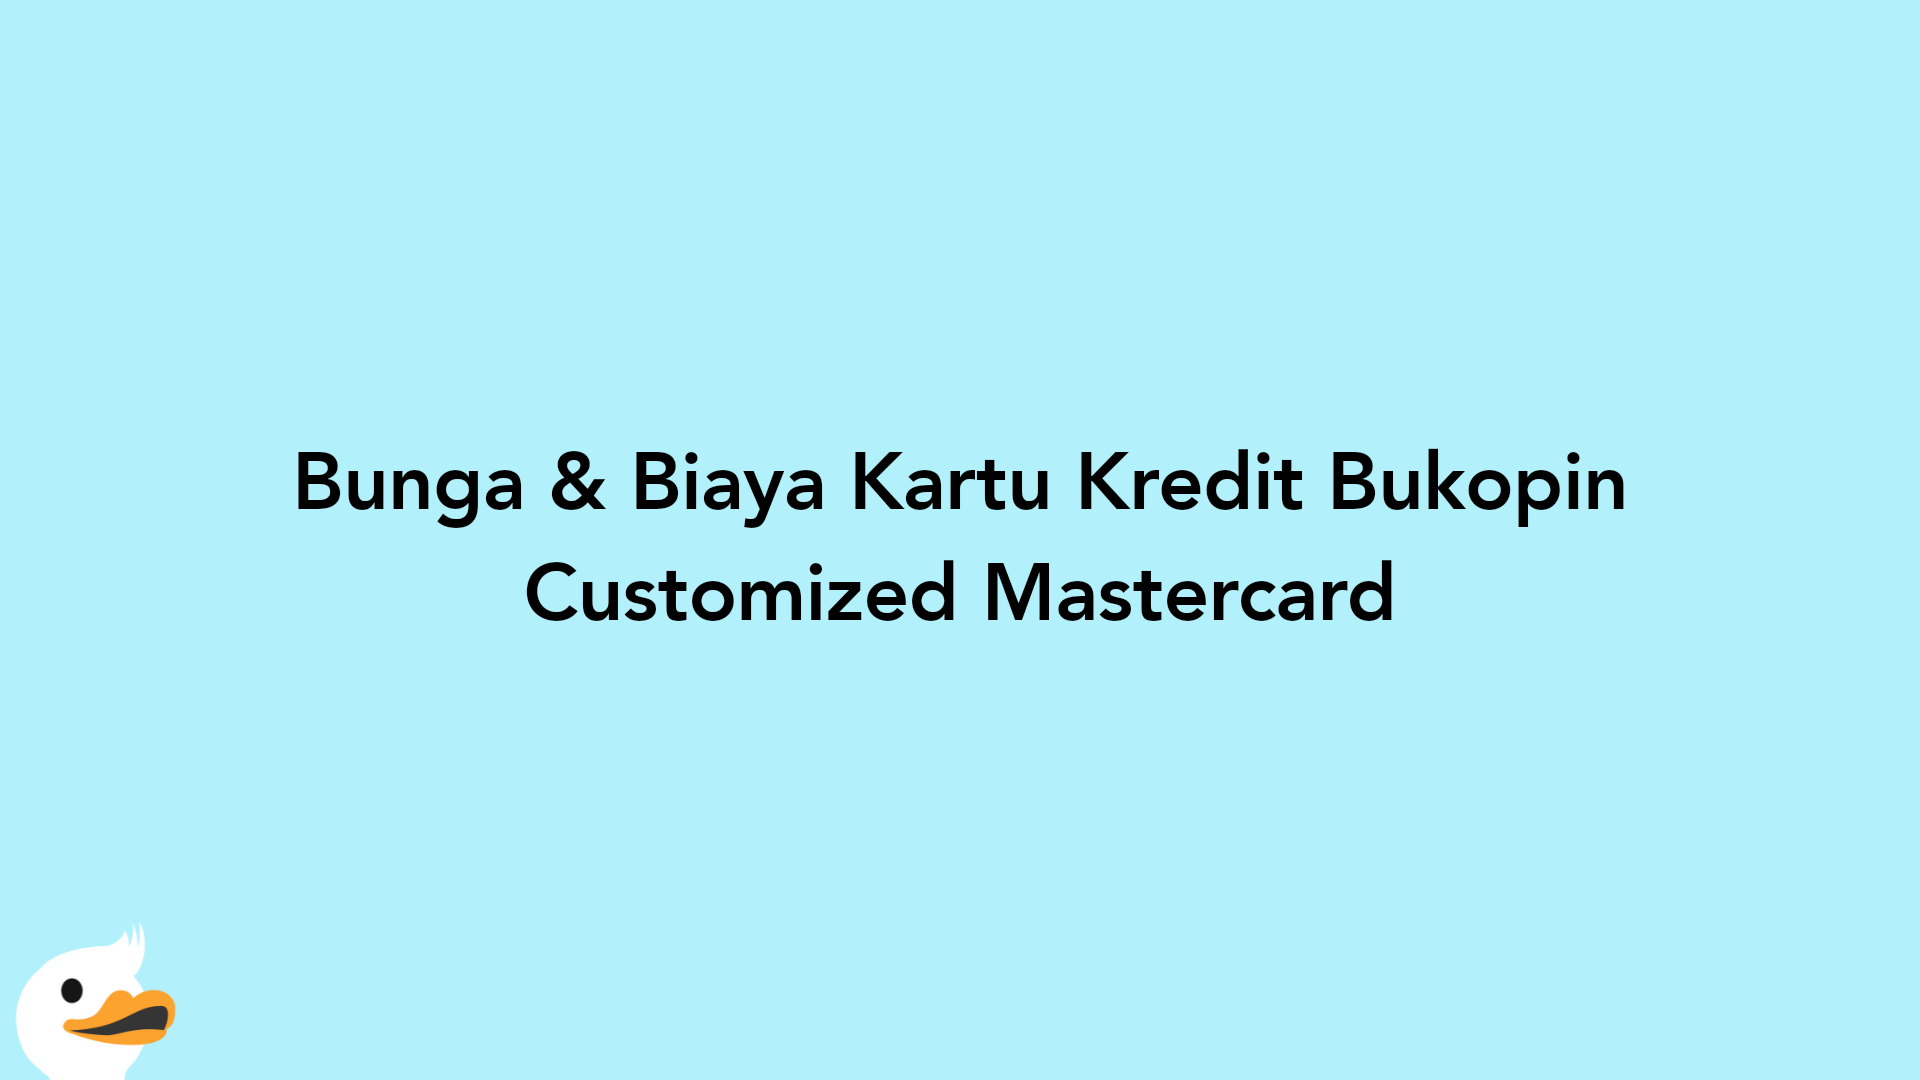 Bunga & Biaya Kartu Kredit Bukopin Customized Mastercard